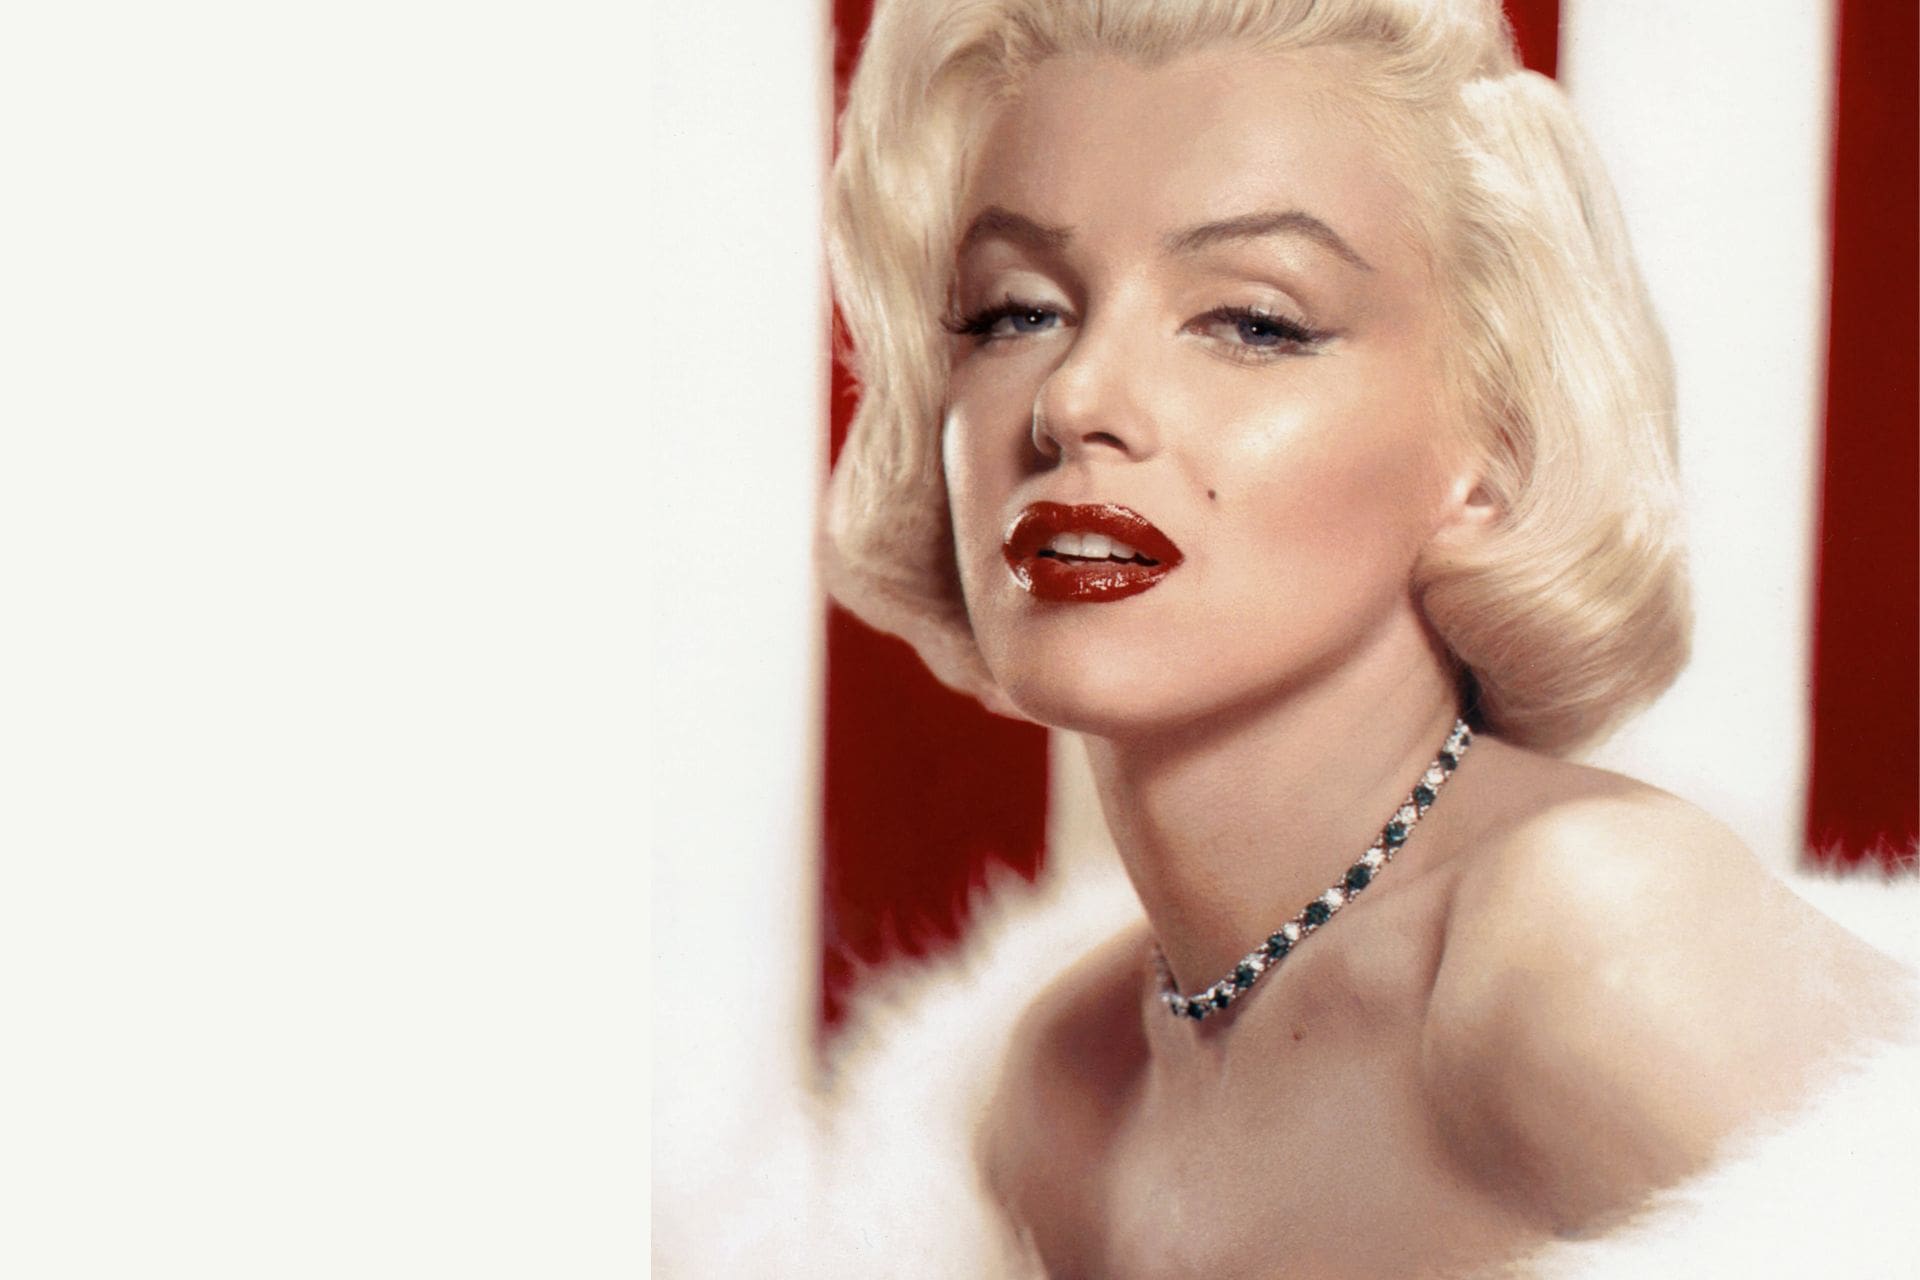 Pertences de Marilyn Monroe vão a leilão